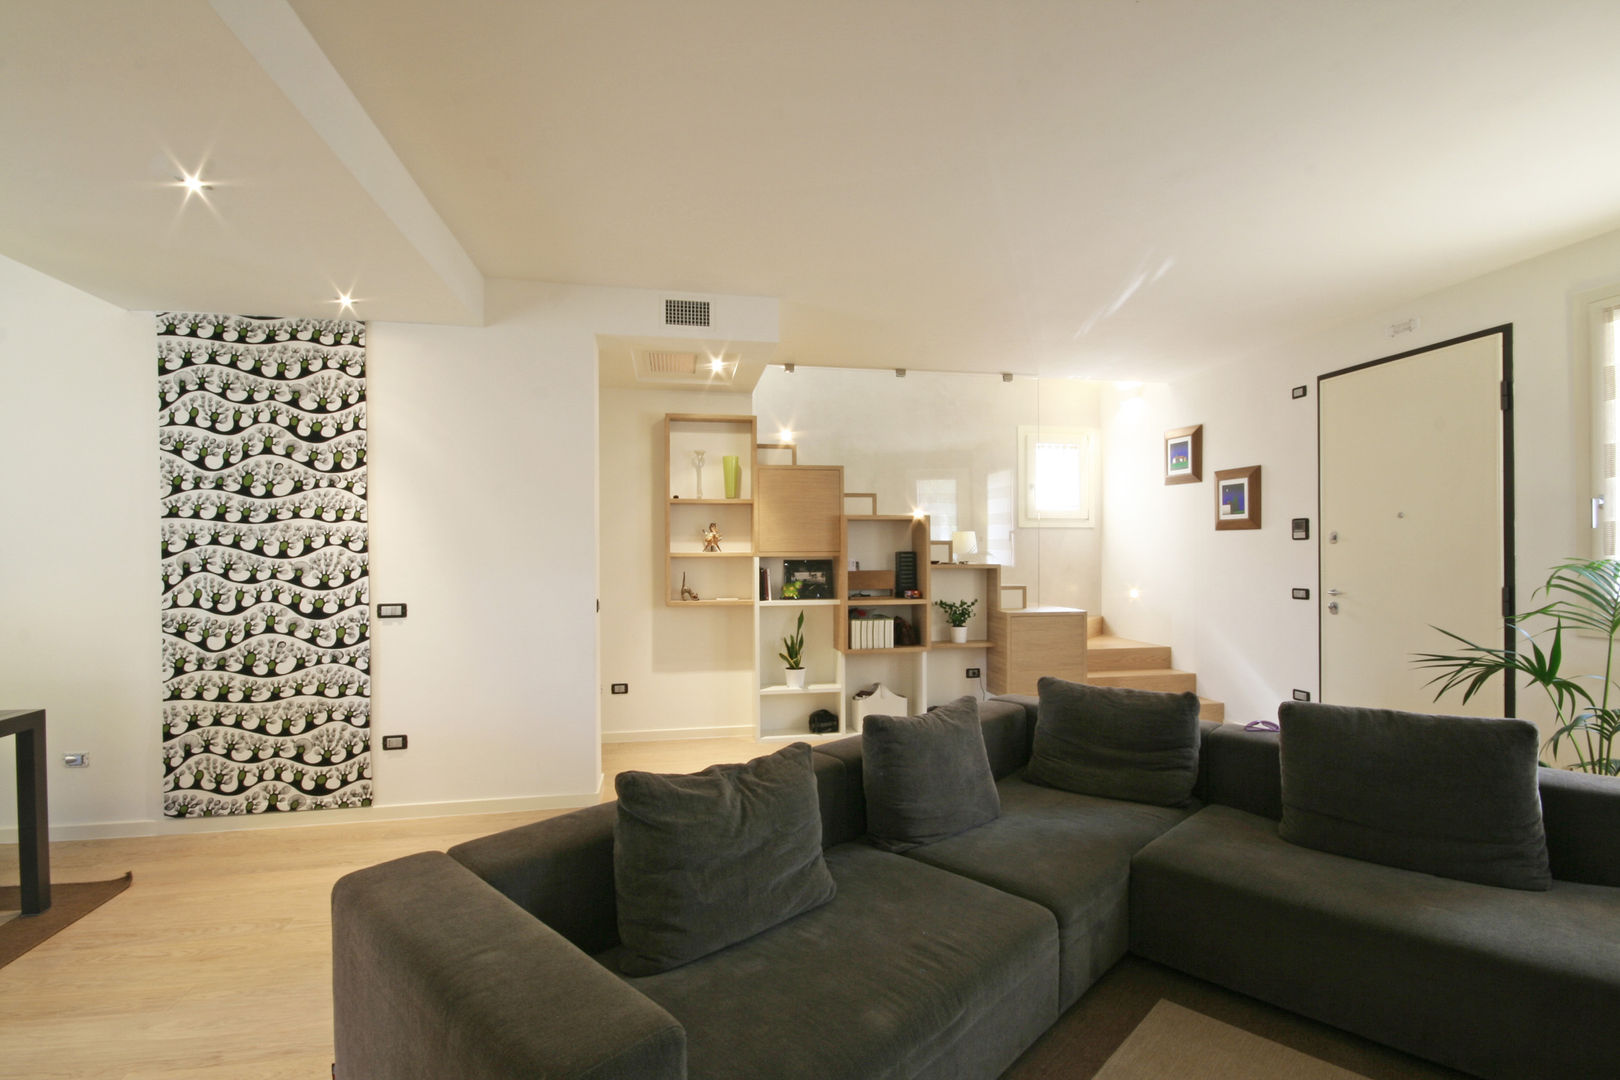 House in Marostica, Diego Gnoato Architect Diego Gnoato Architect Salones modernos Muebles de televisión y dispositivos electrónicos